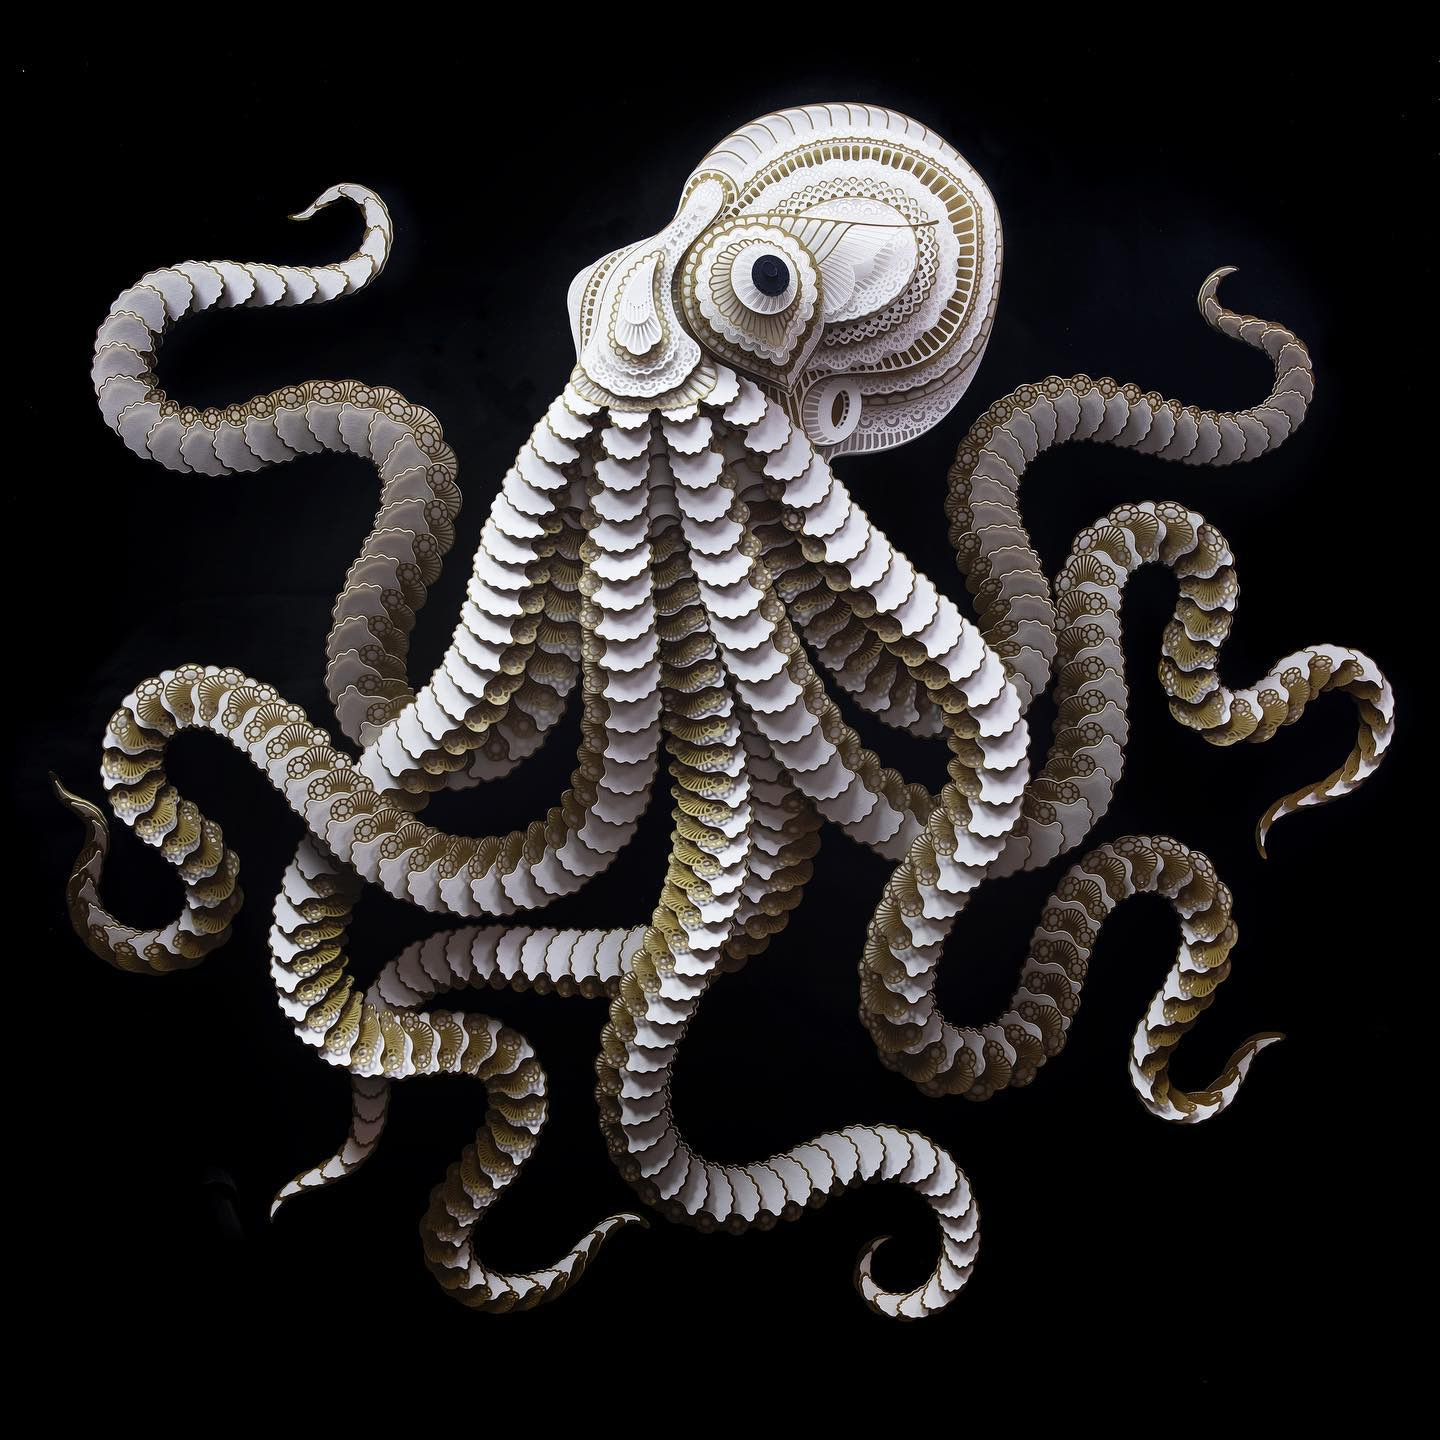 octopus relief paper sculpture